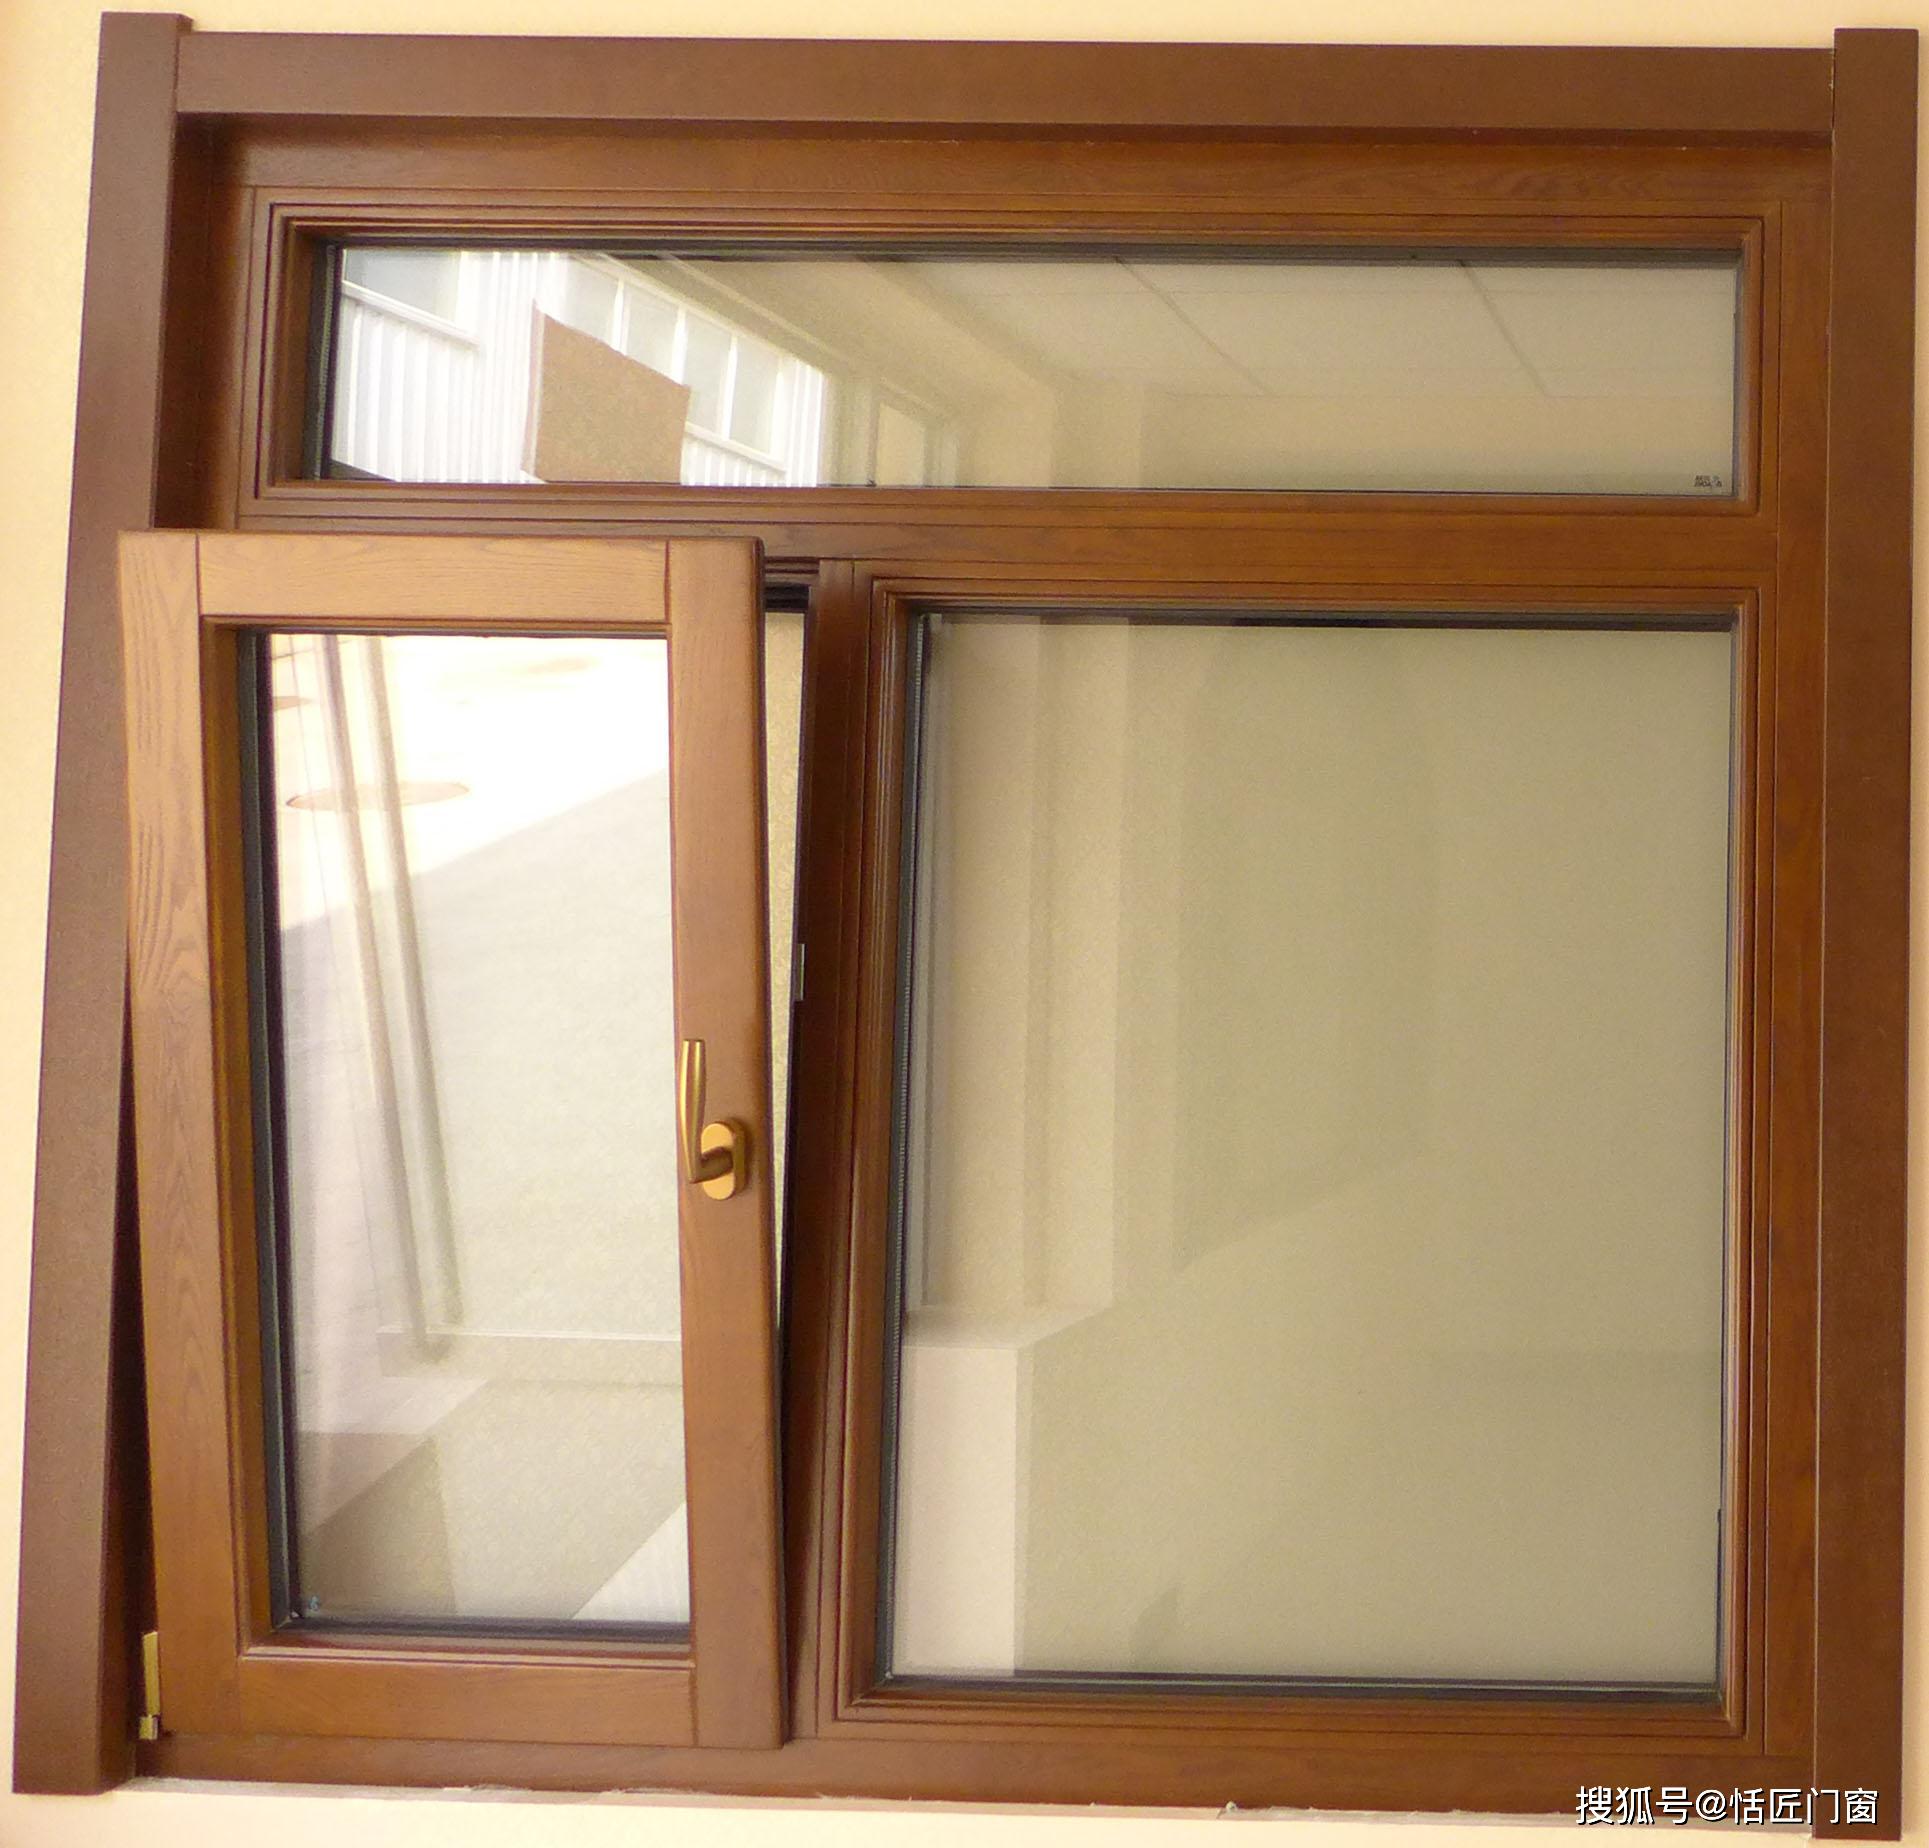 铝包木门窗集铝合金窗与木窗的优点于一身,室外部分采用铝合金,成型